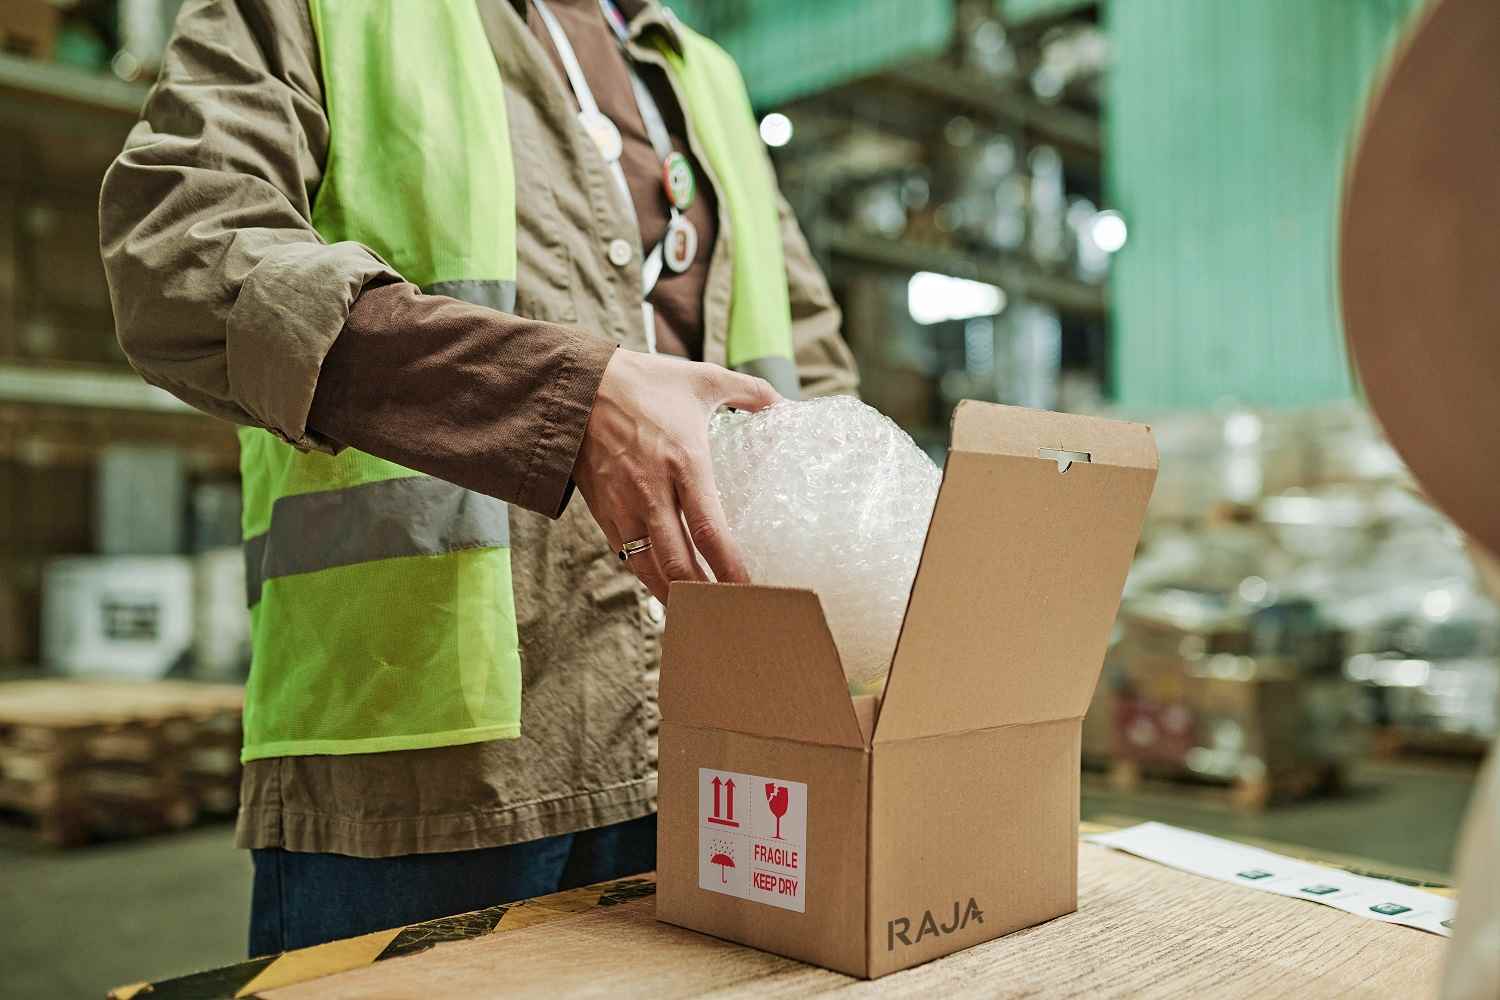 Comment bien emballer vos produits pour la livraison ? - Shippr